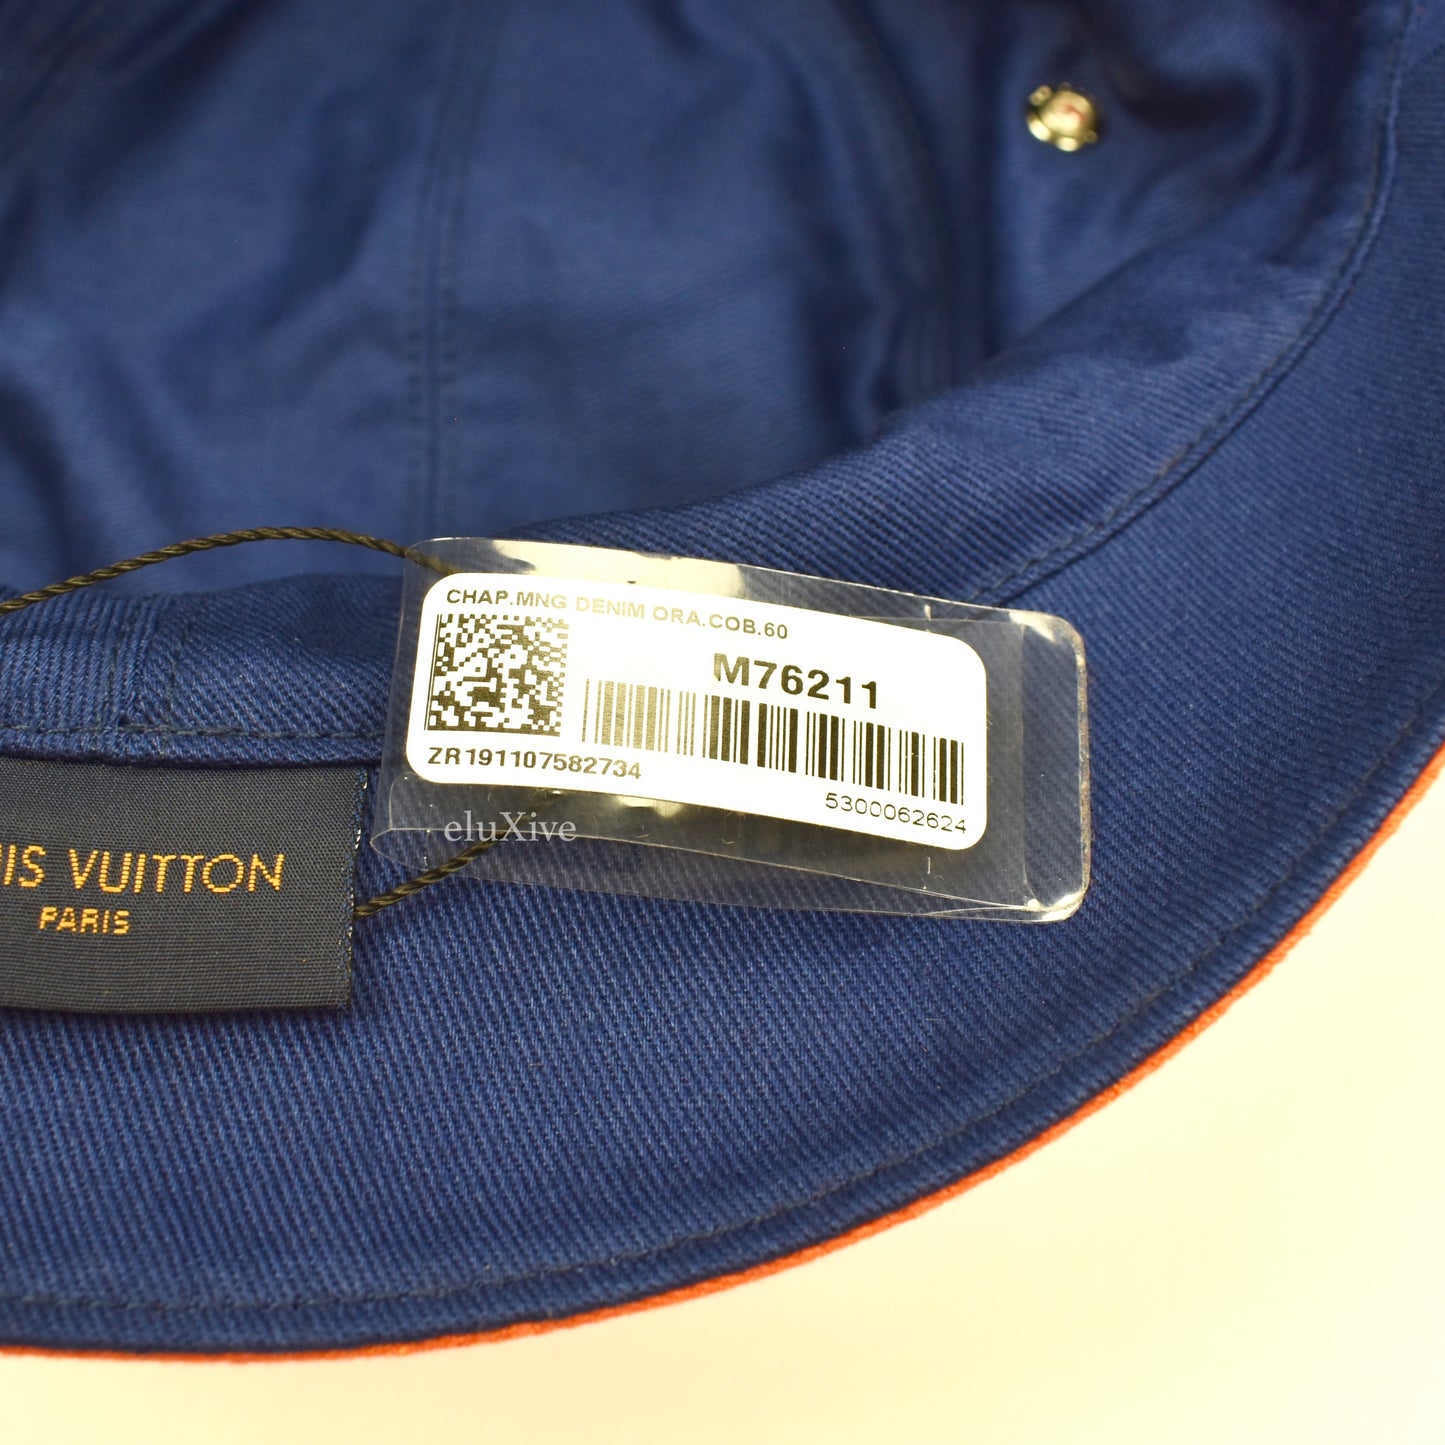 Louis Vuitton - Monogram Denim Woven Bucket Hat (Orange)